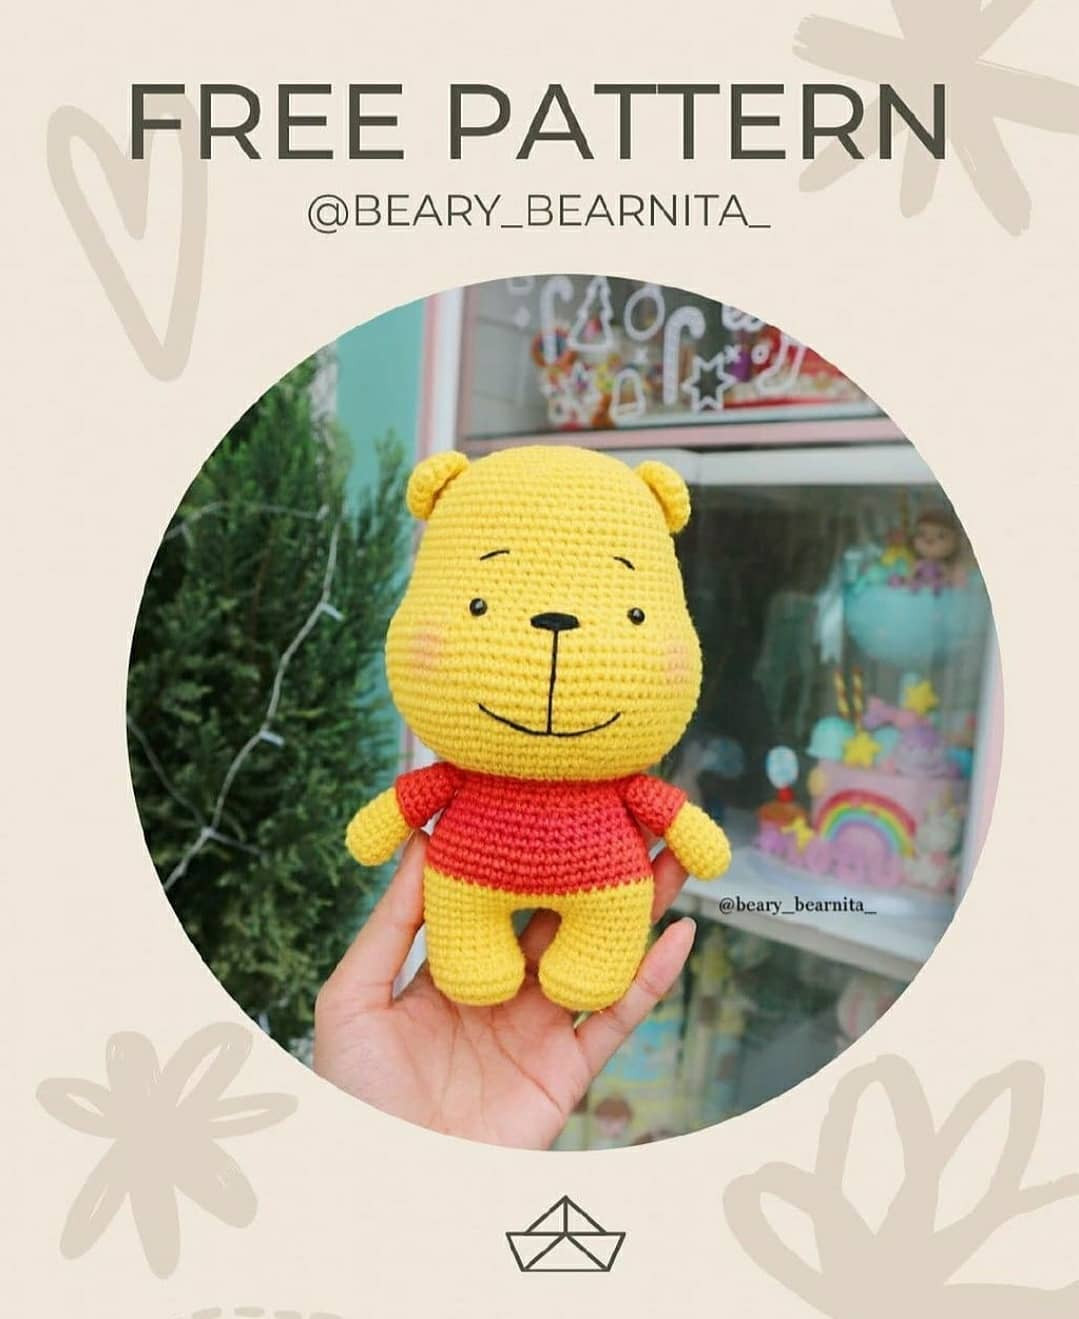 winne the pooh free pattern